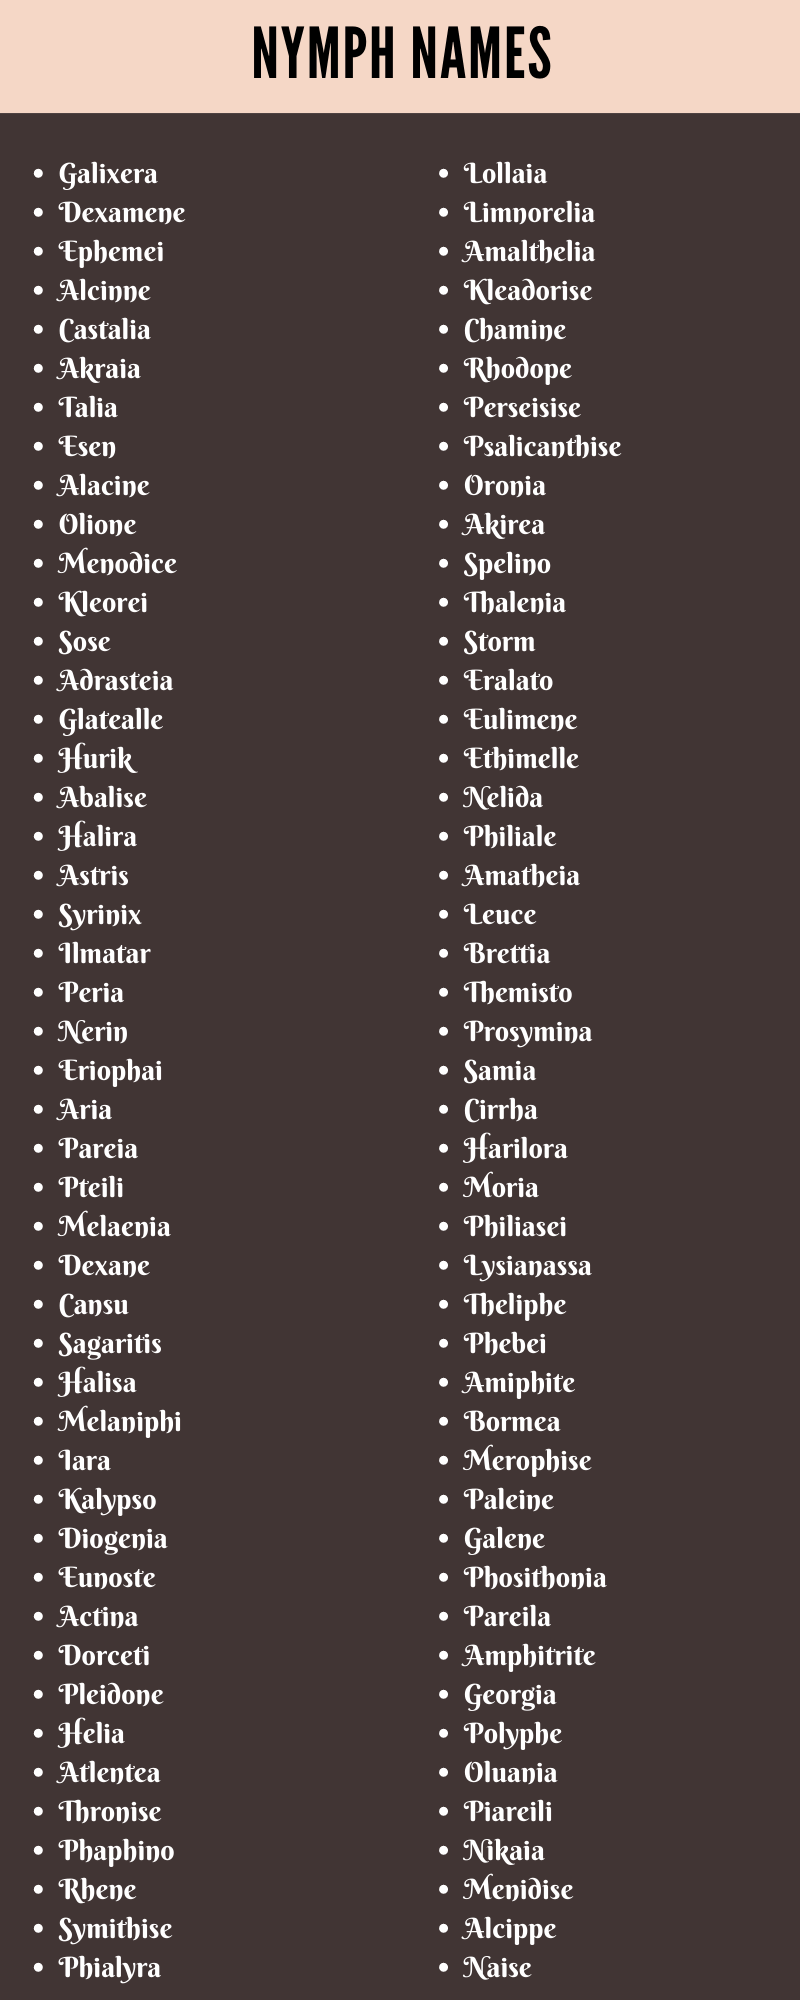 Nymph Names